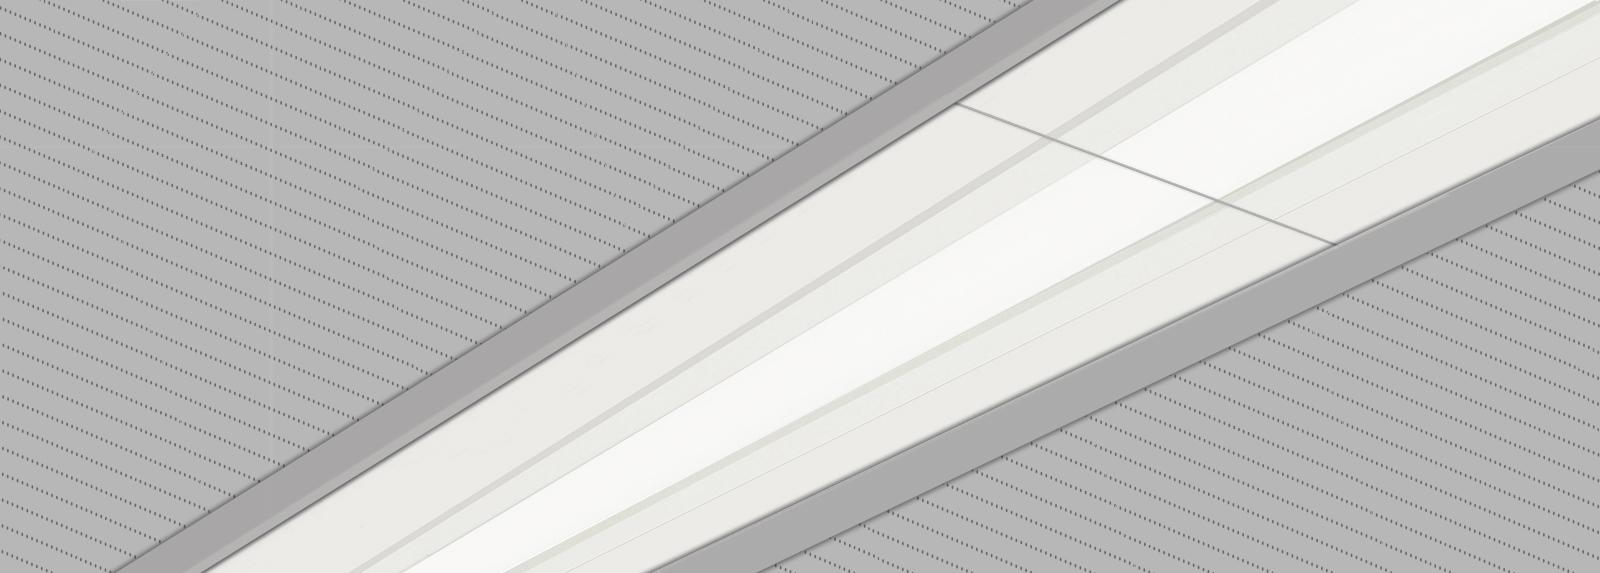 ESOR 100 | Lineare Einbau-Downlights zum Austausch der Beleuchtung